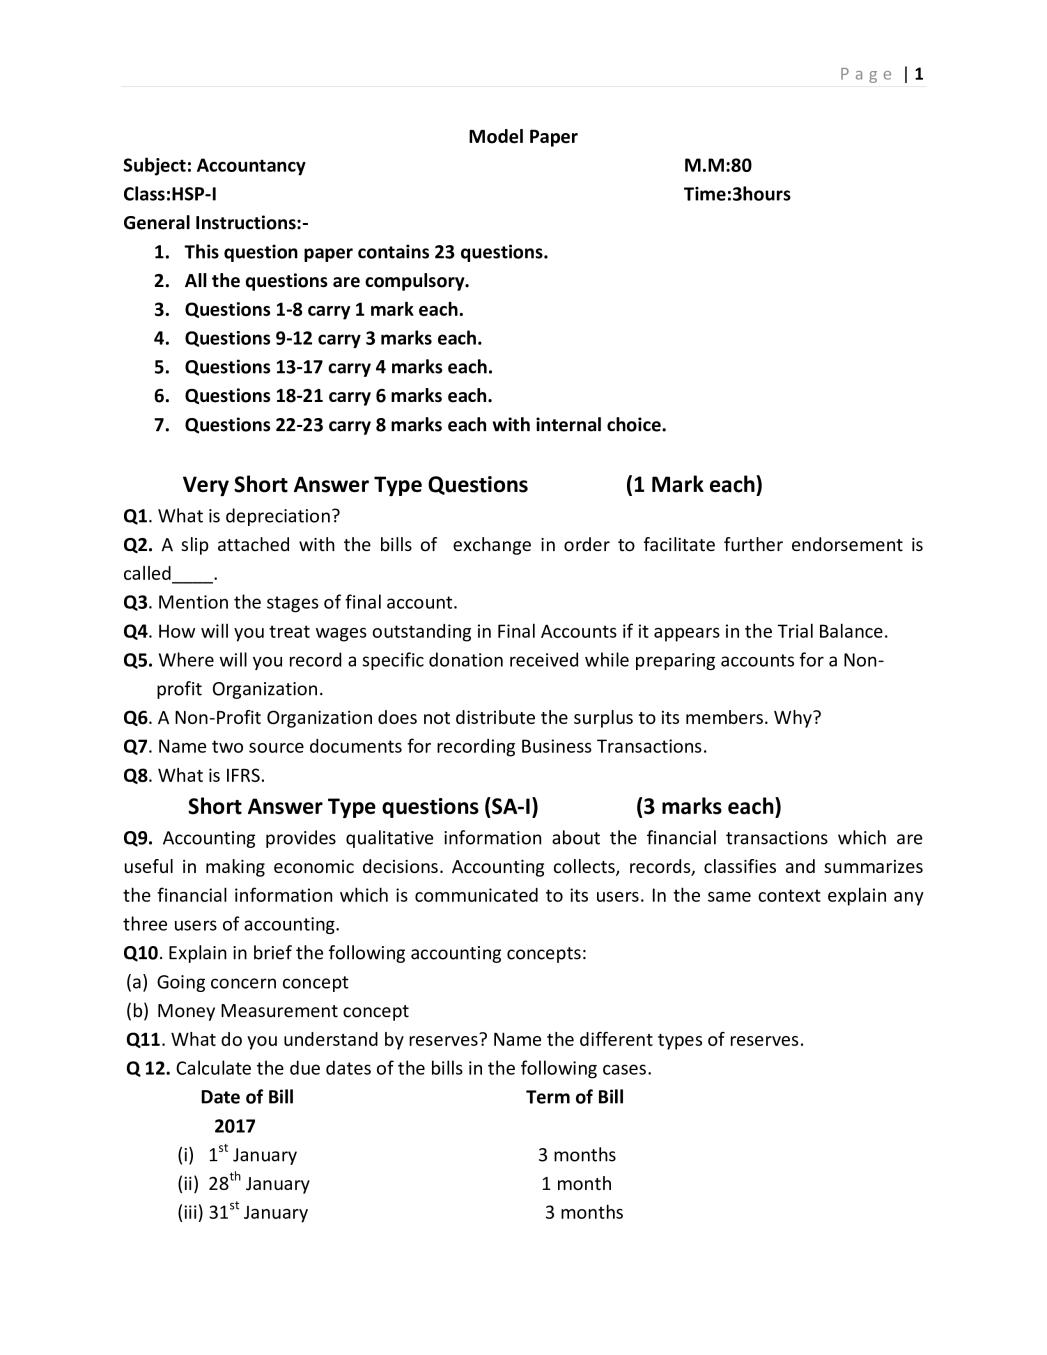 JKBOSE 11th Model Paper Accountancy - Page 1